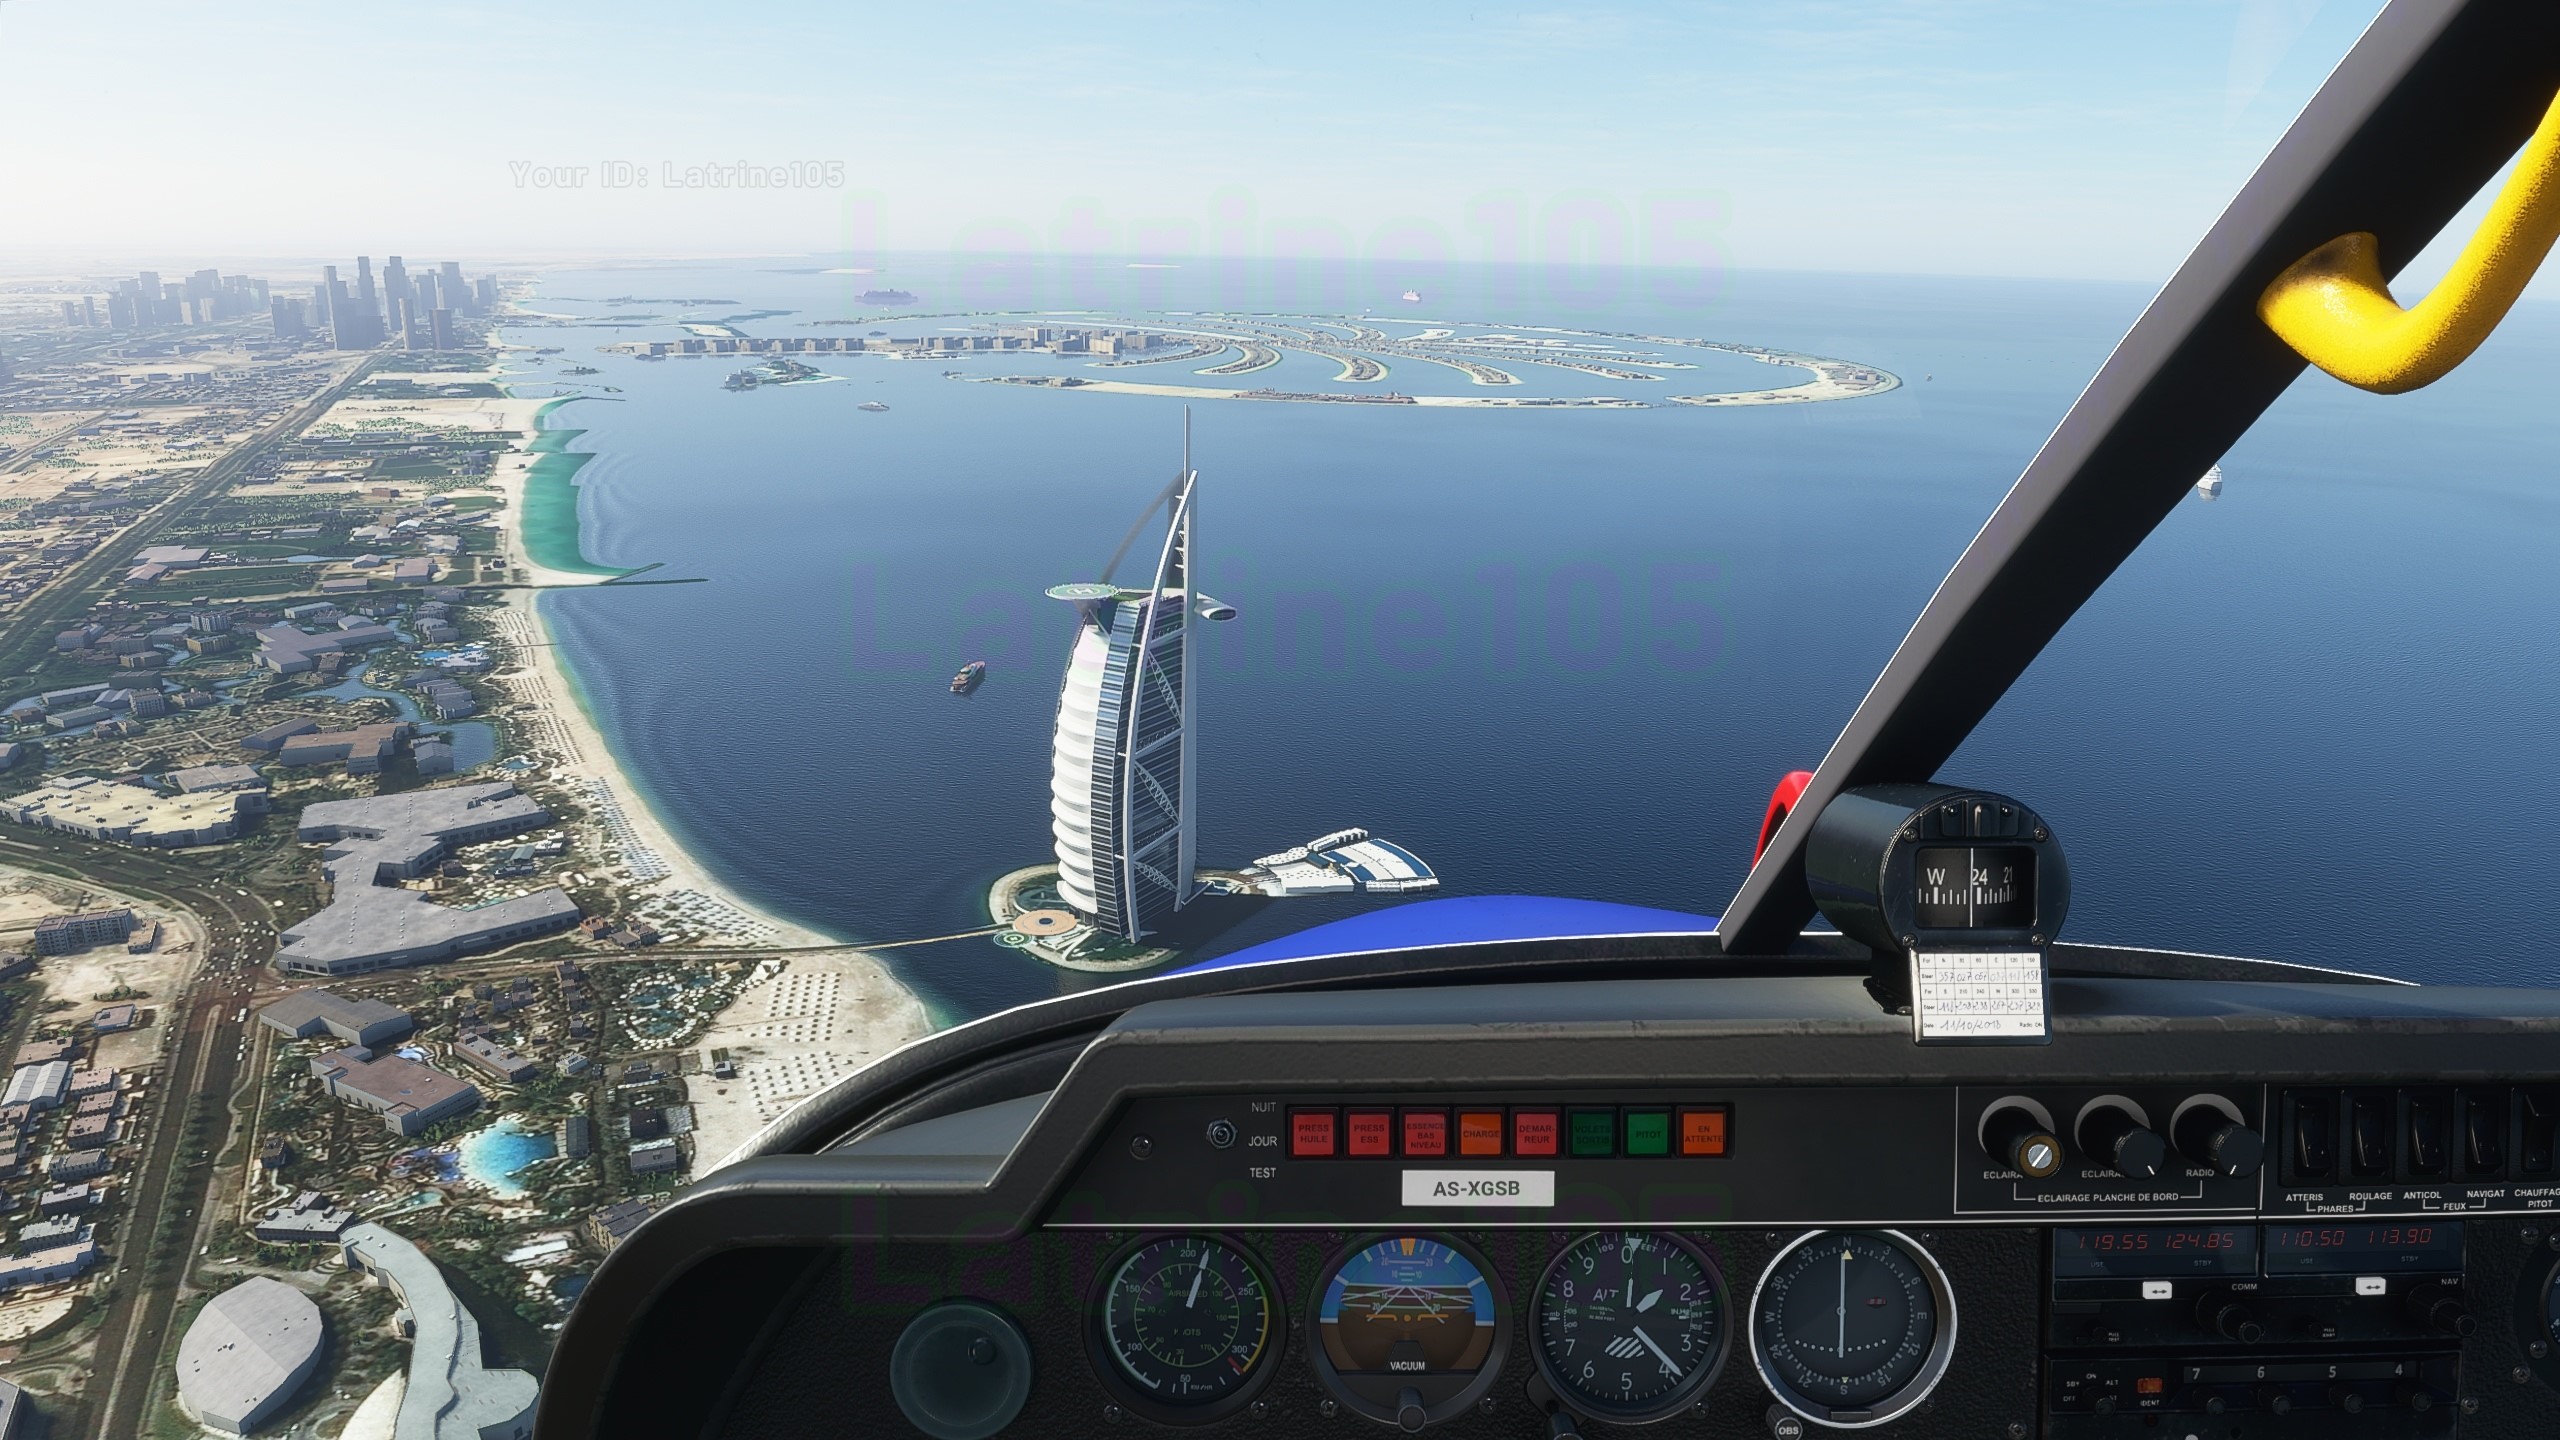 Buy Microsoft Flight Simulator and download